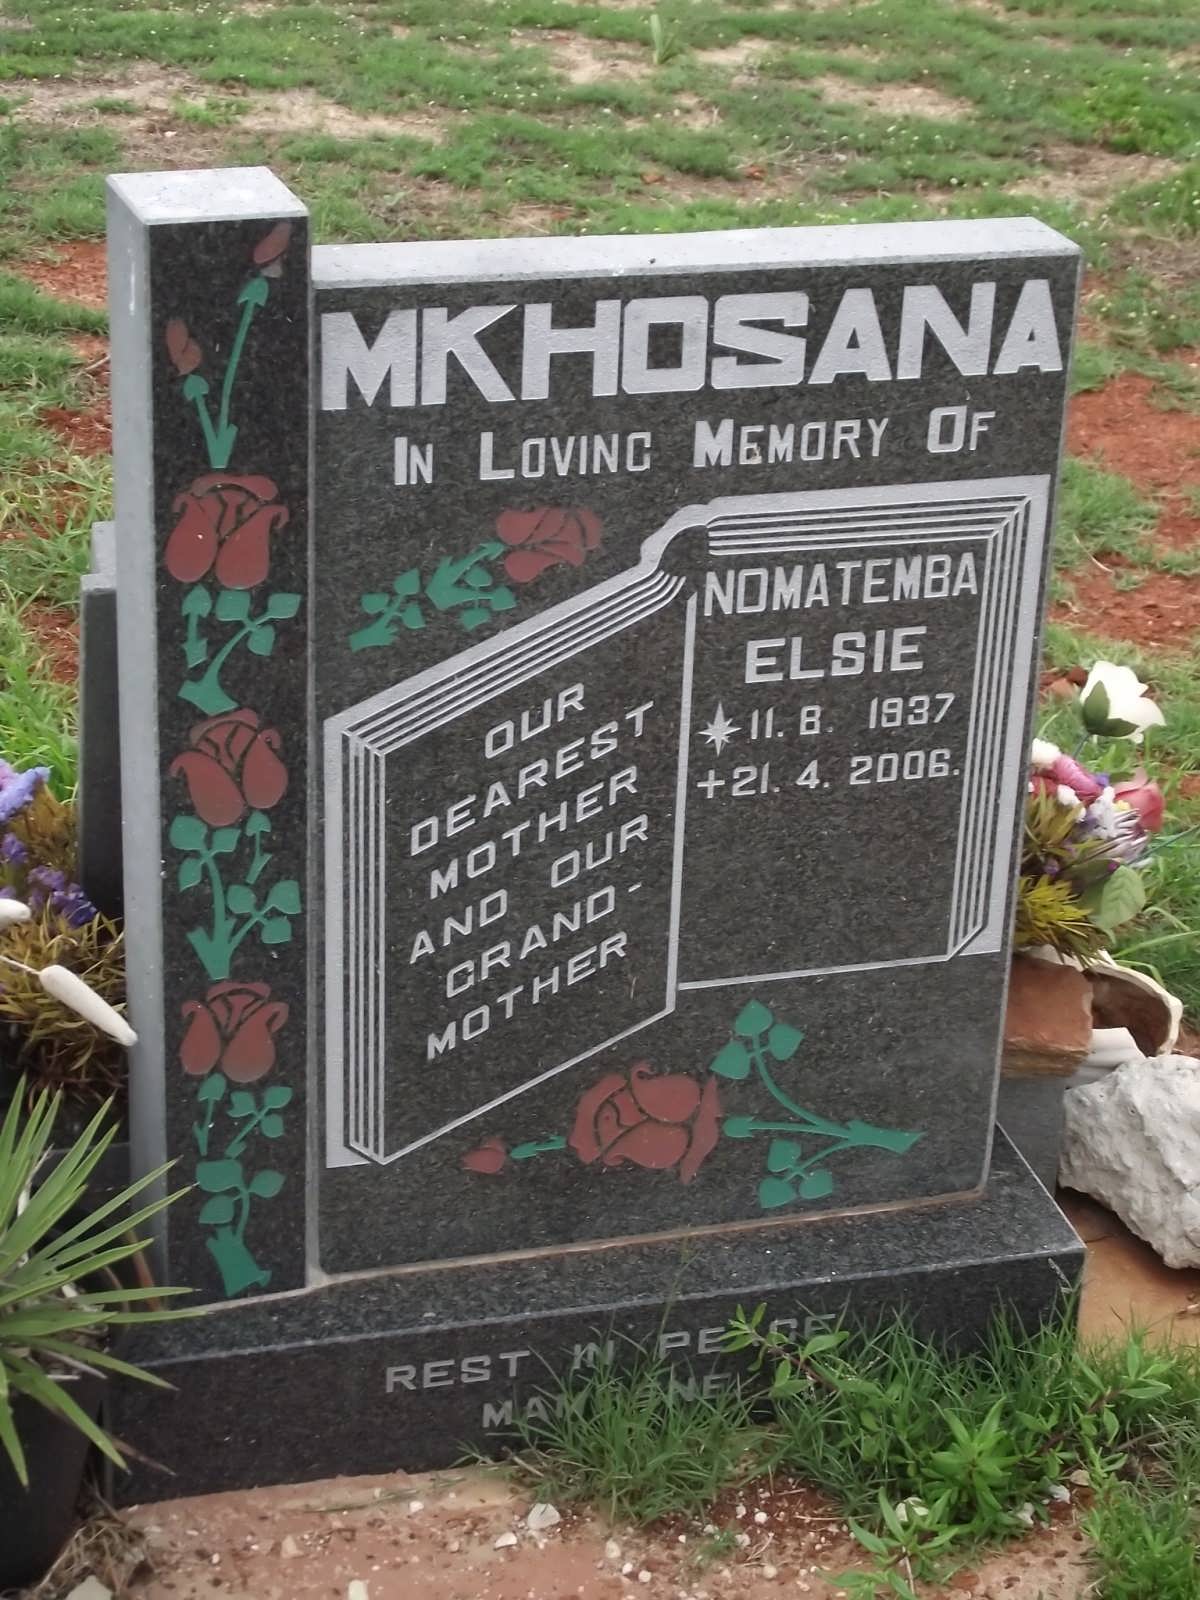 MKHOSANA Nomatemba Elsie 1937-2006